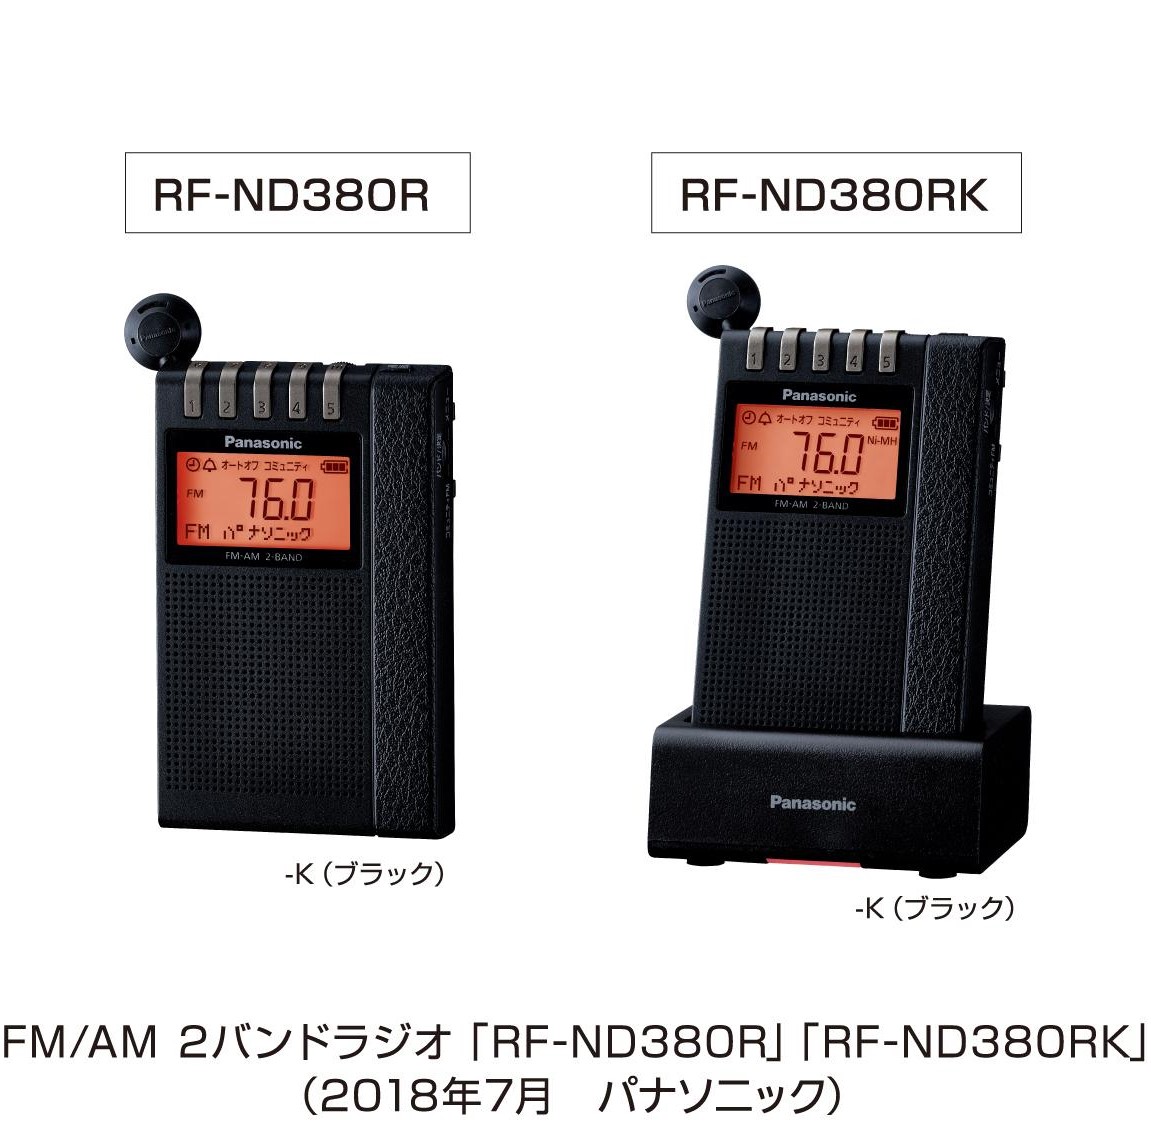 よしおのデムパな日: パナソニック 通勤ラジオRF-ND380R(K)発表 